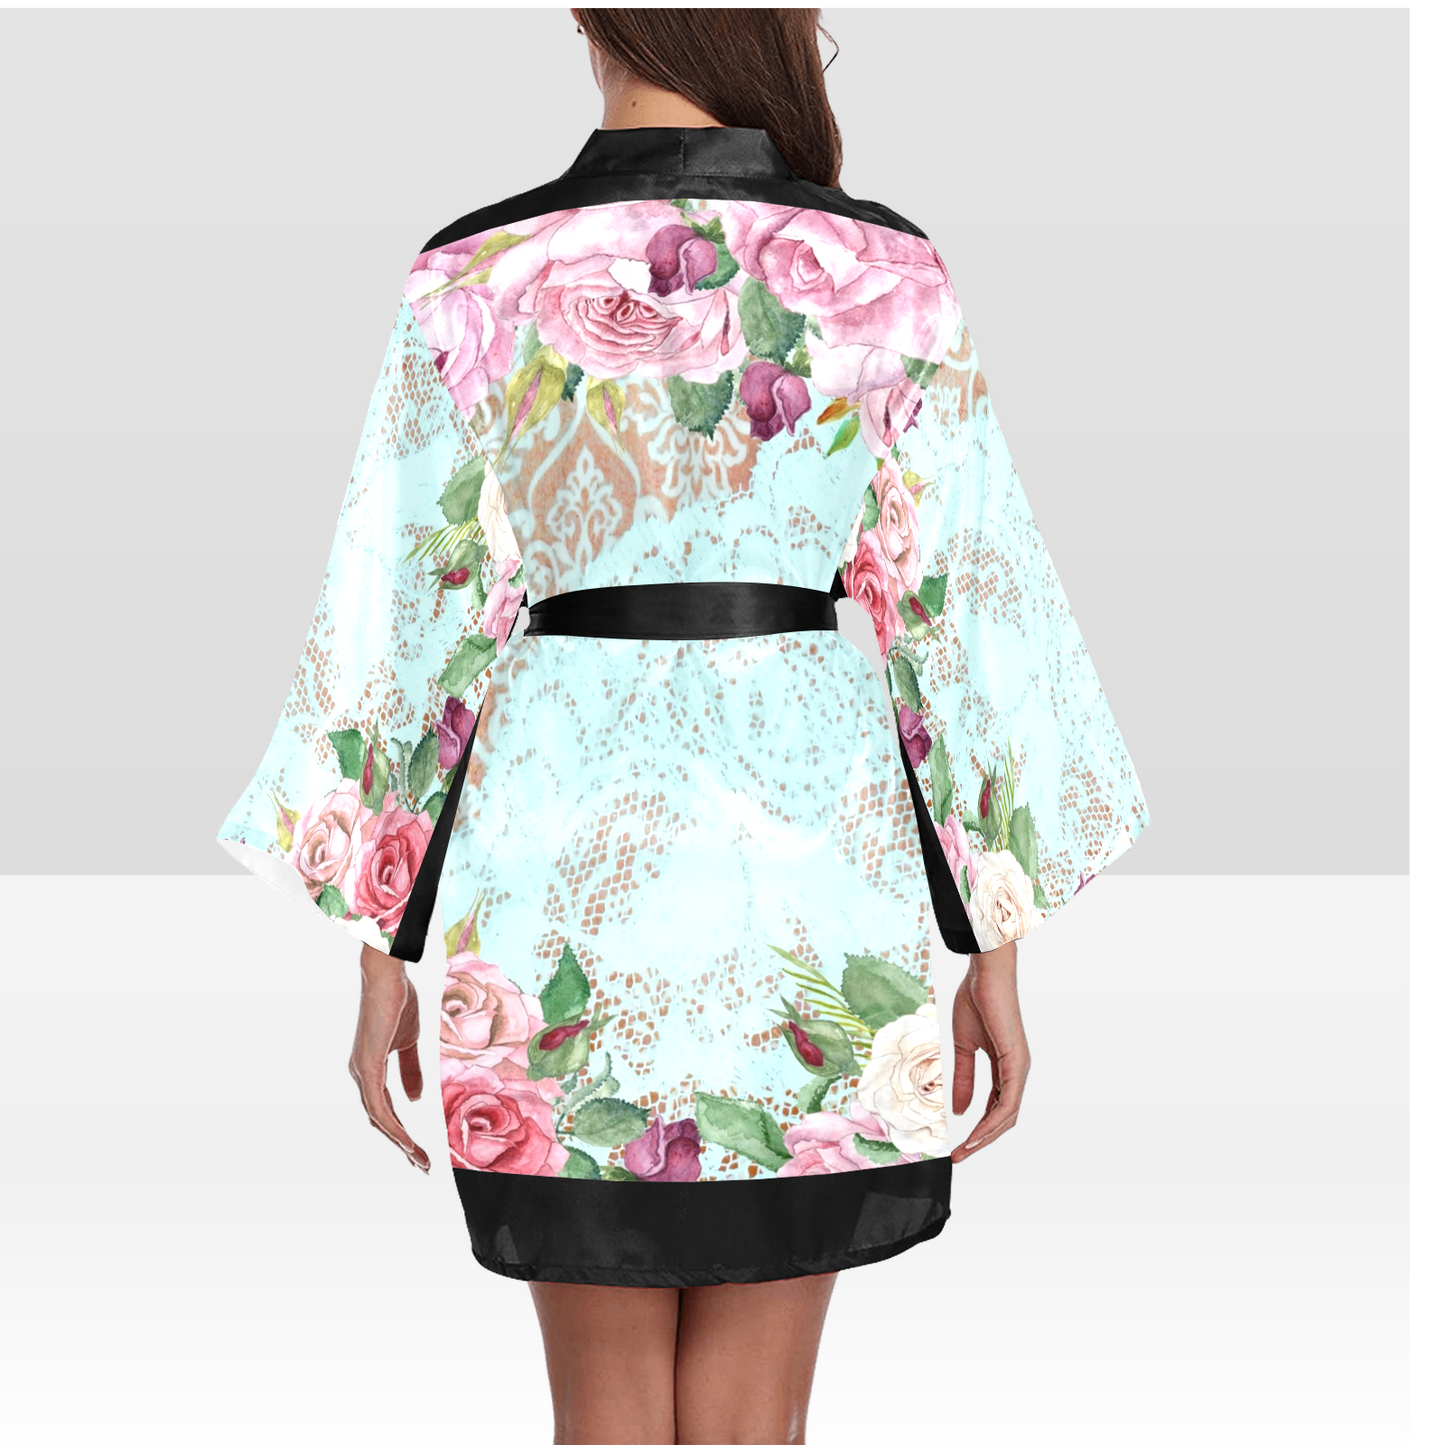 Victorian Lace Kimono Robe, Black or White Trim, Sizes XS to 2XL, Design 24